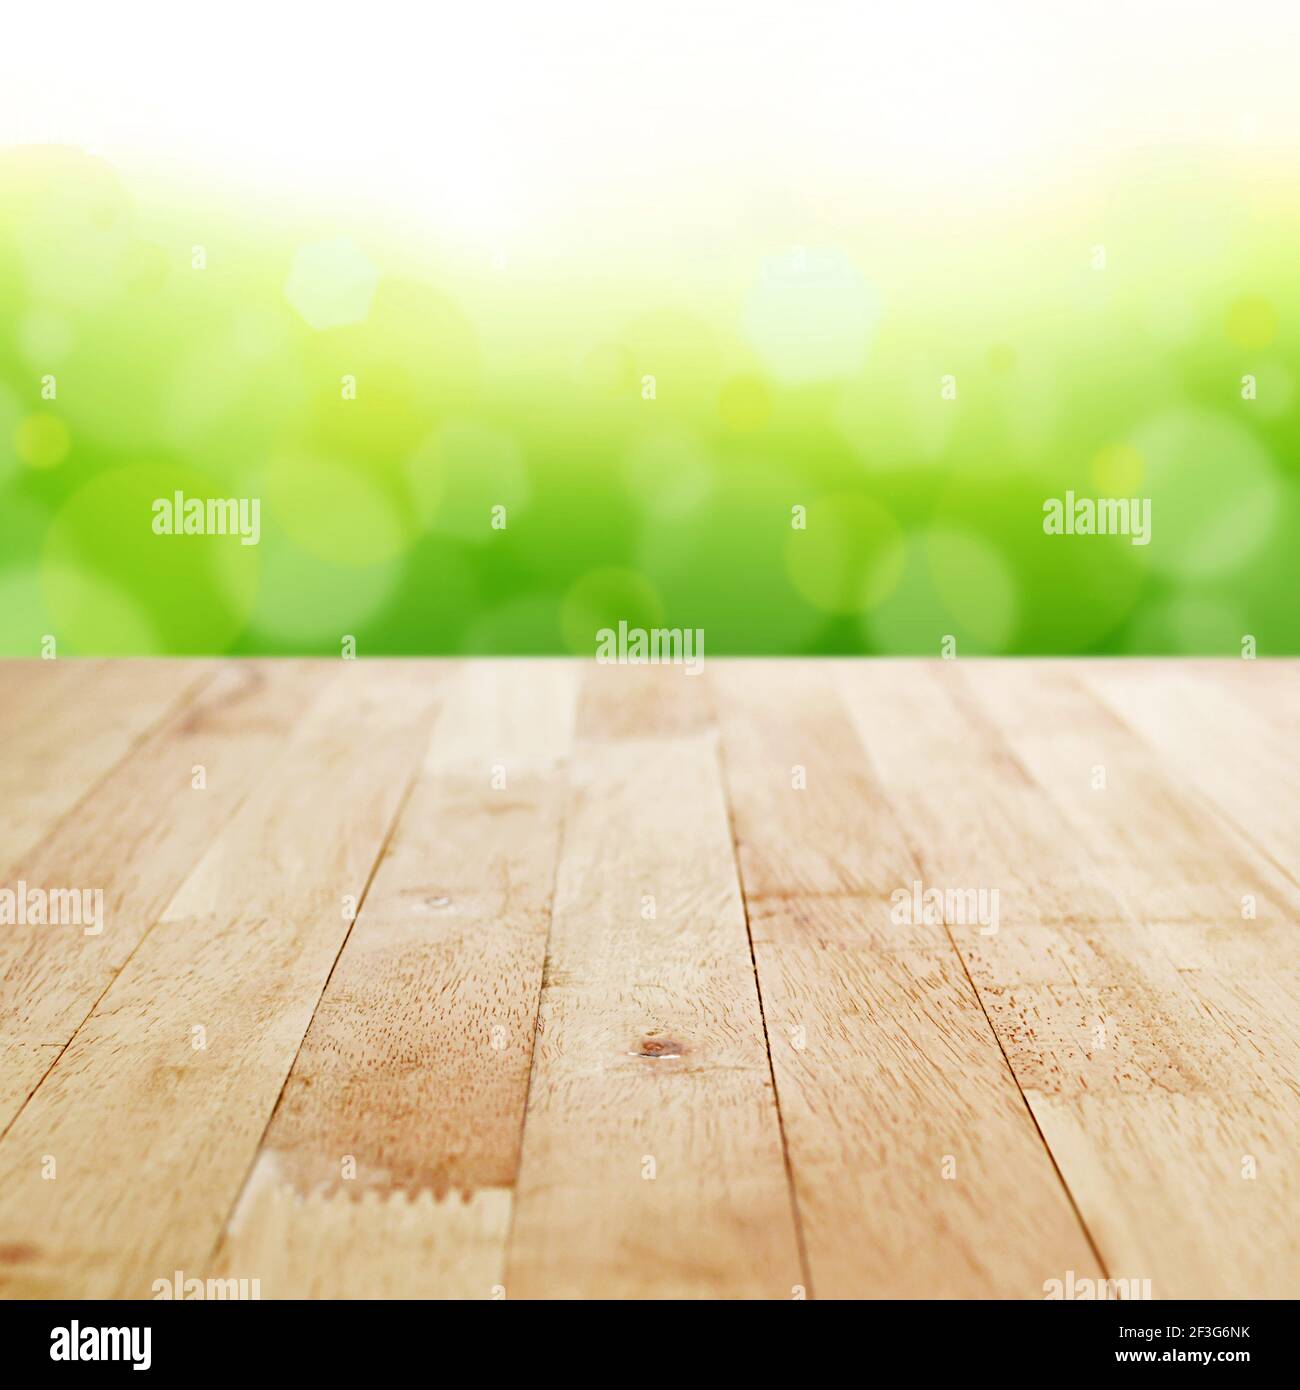 Holz Tischplatte auf Weichzeichnung grün Bokeh Hintergrund - kann Für die Montage oder Anzeige Ihrer Produkte verwendet werden Stockfoto